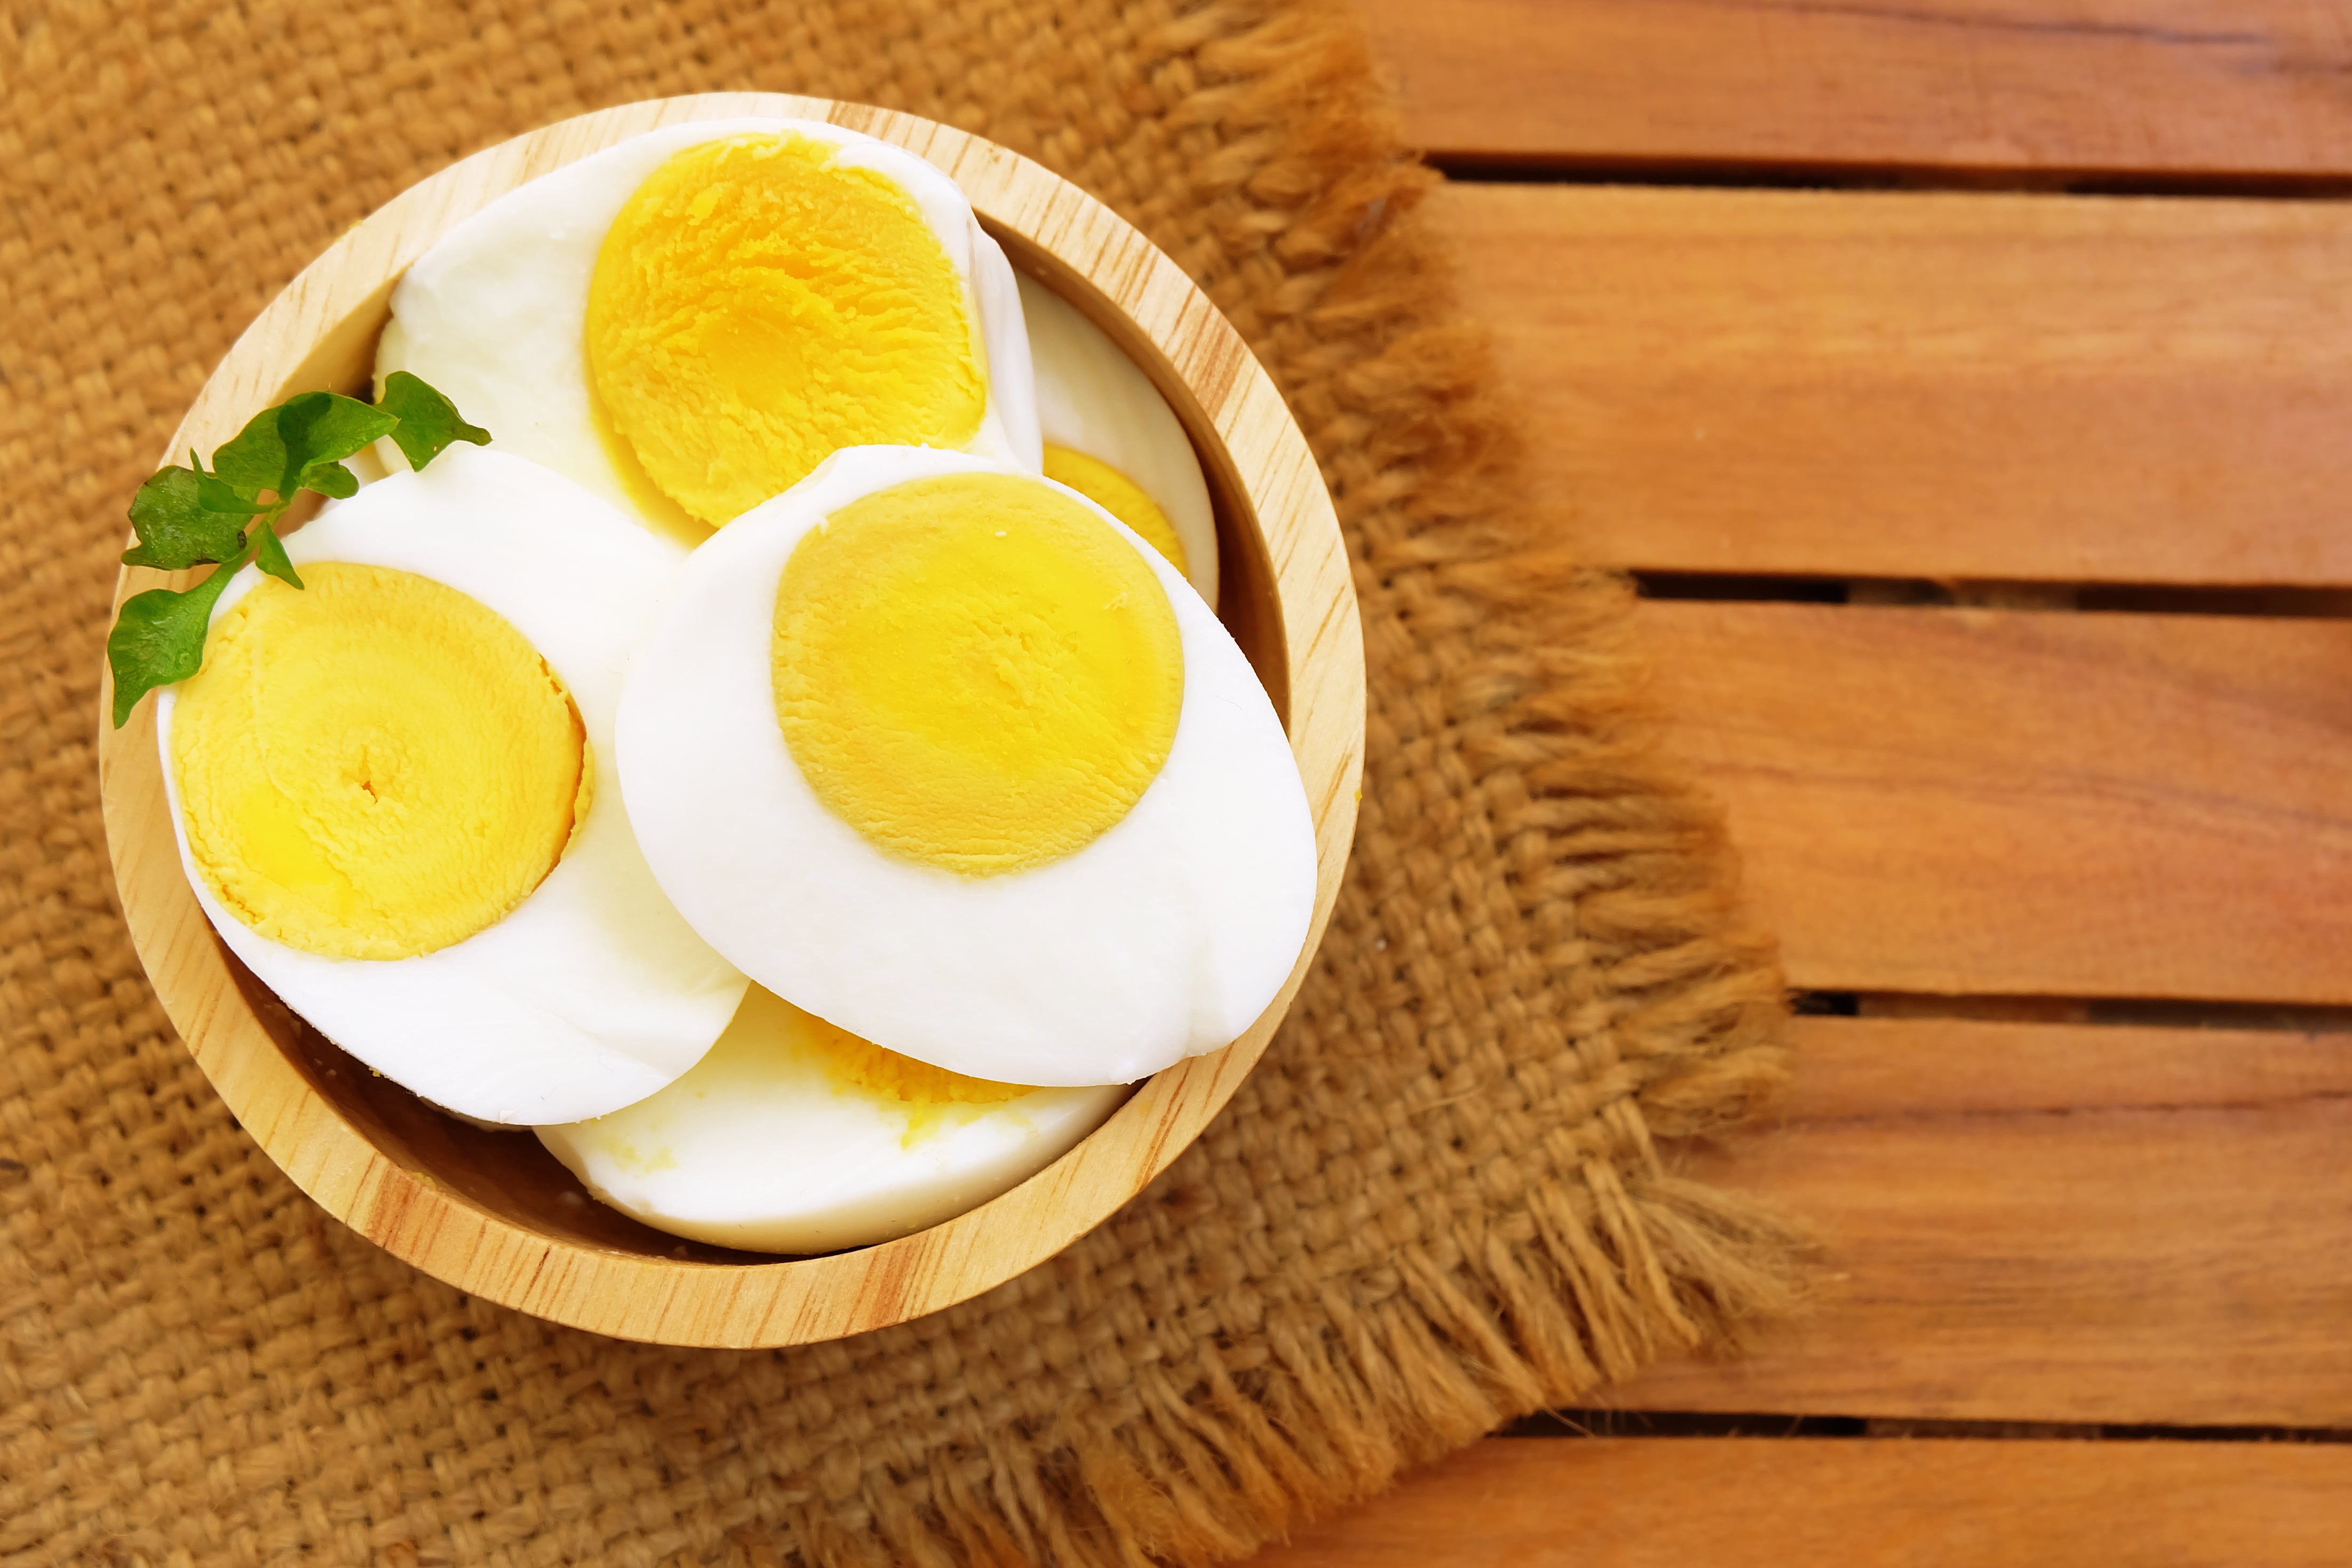 При гастрите можно яйца вареные. Вареные яйца. Яйцо отварное. Яйцо в крутую. Разрезанное вареное яйцо.